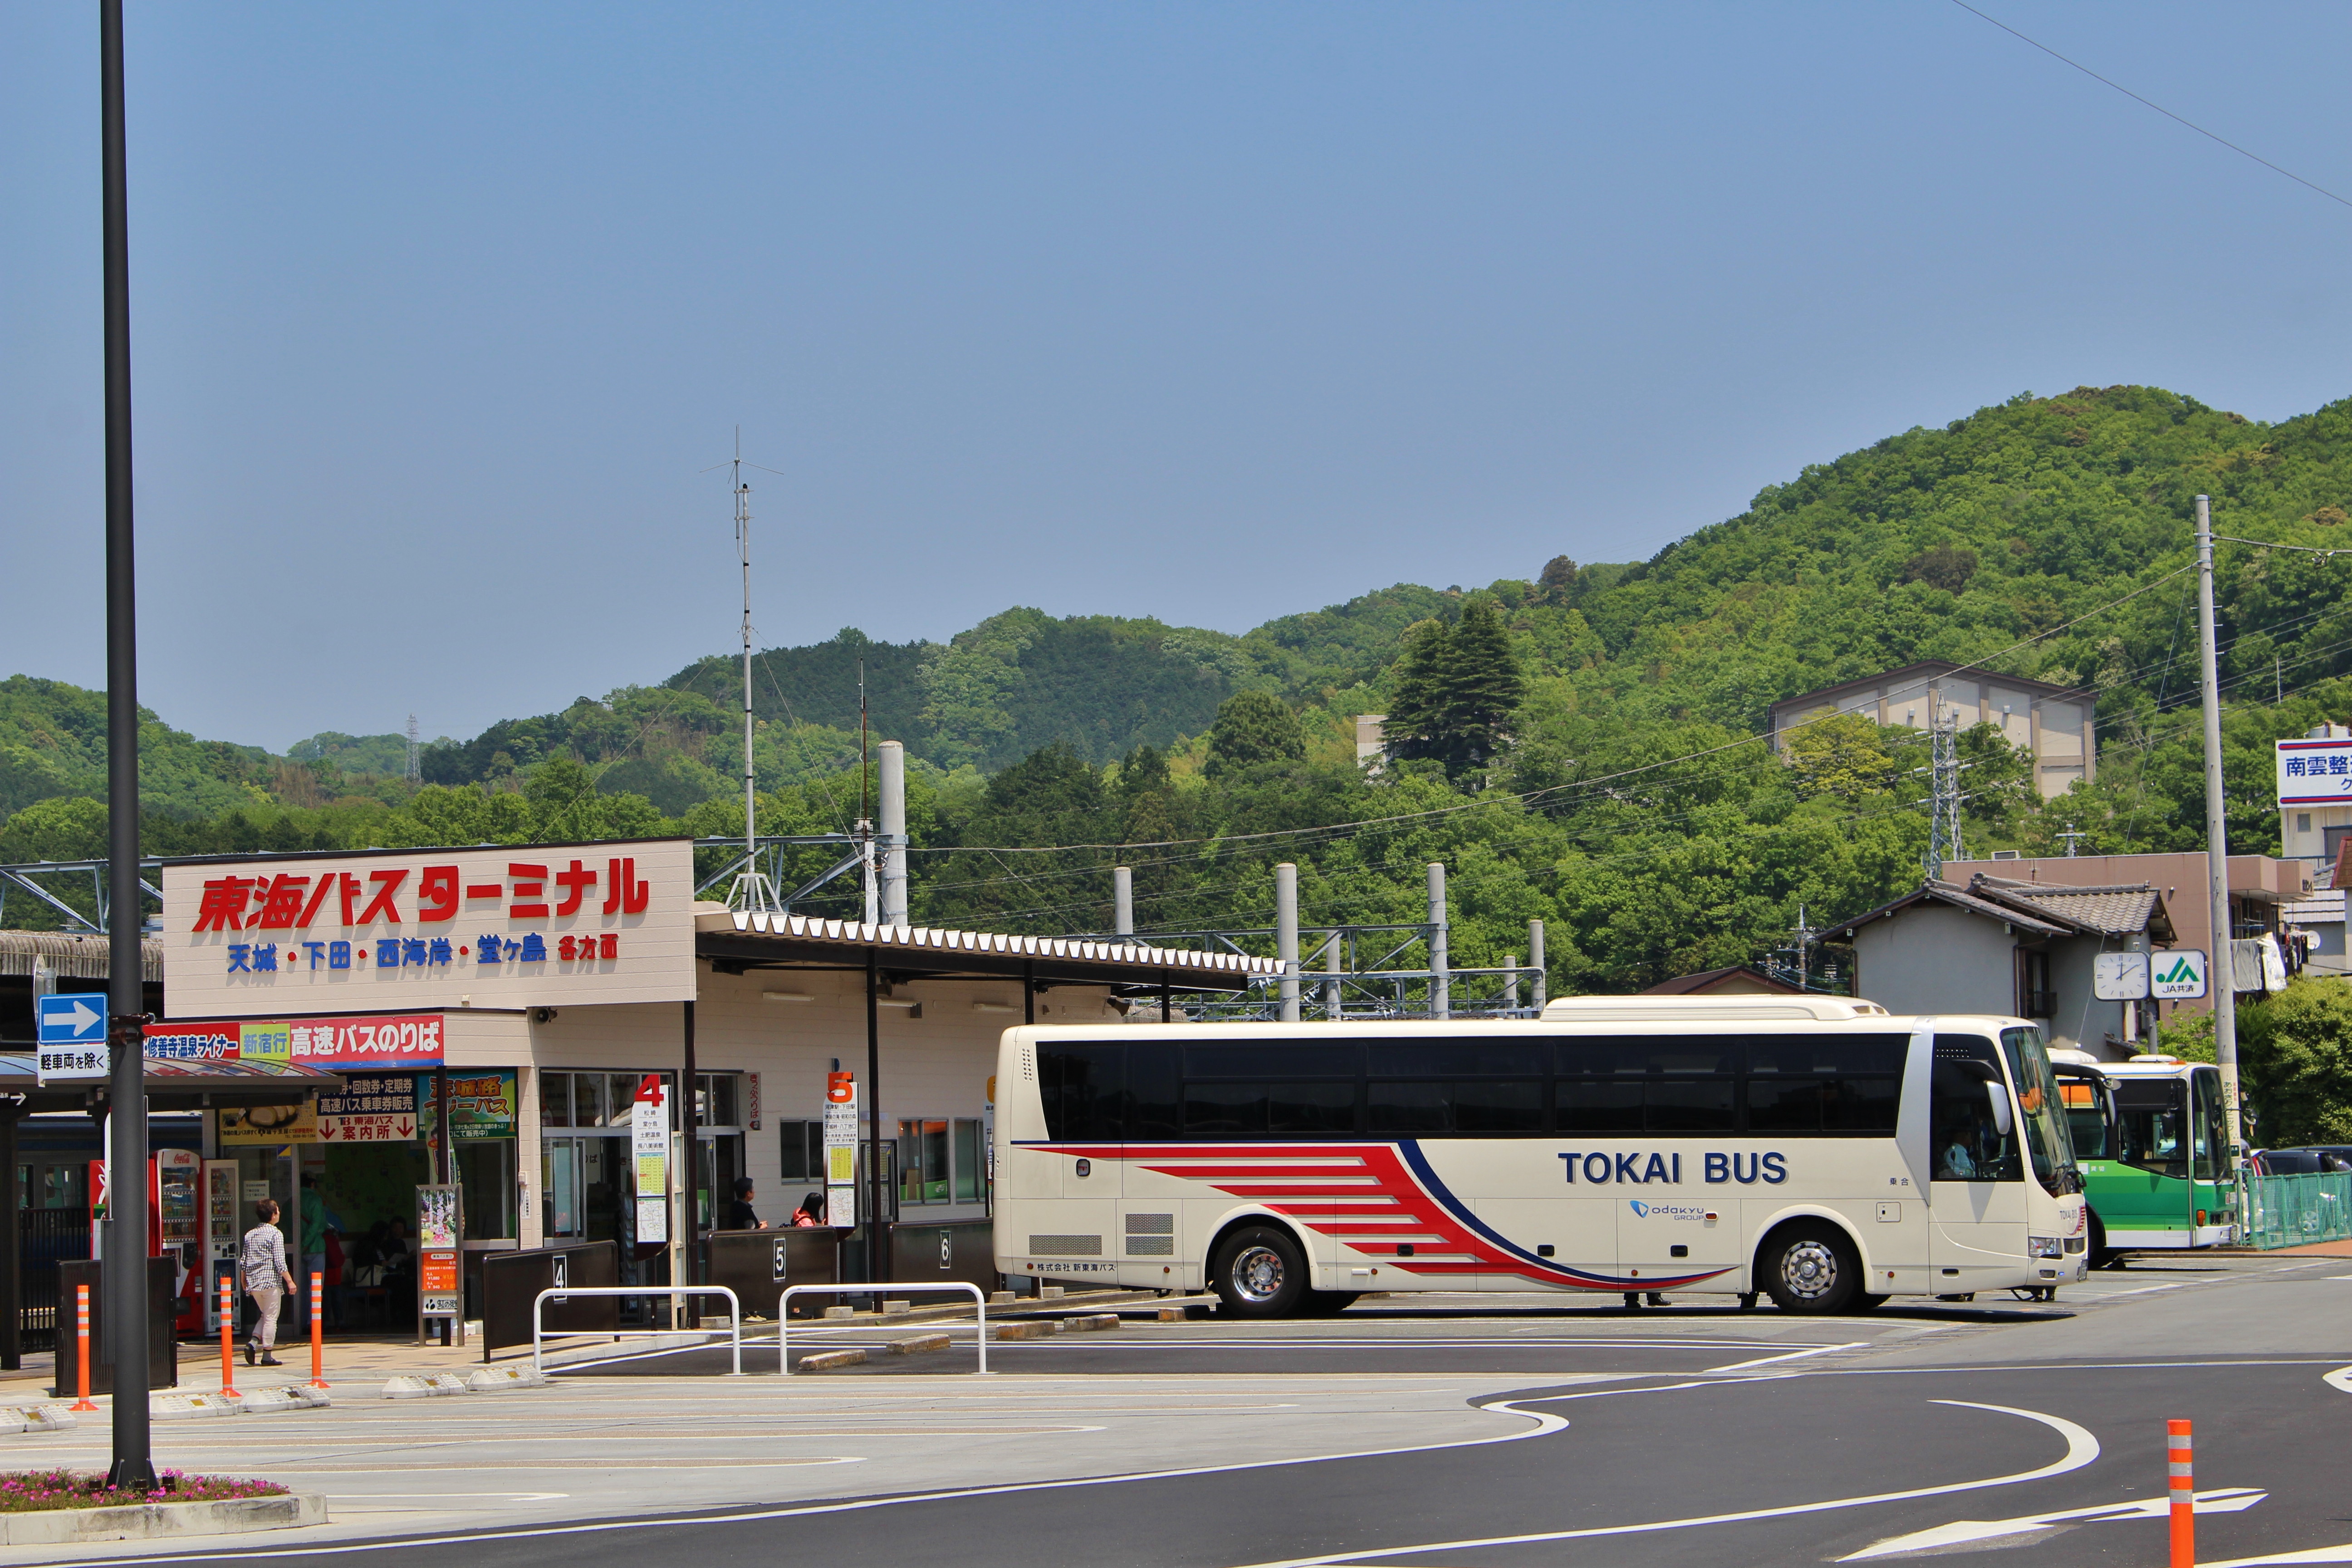 三島と新宿を結ぶ「三島エクスプレス」、中伊豆の温泉地と新宿を結ぶ「伊豆長岡・修善寺温泉ライナー」、2つの高速乗合バスを運行しております